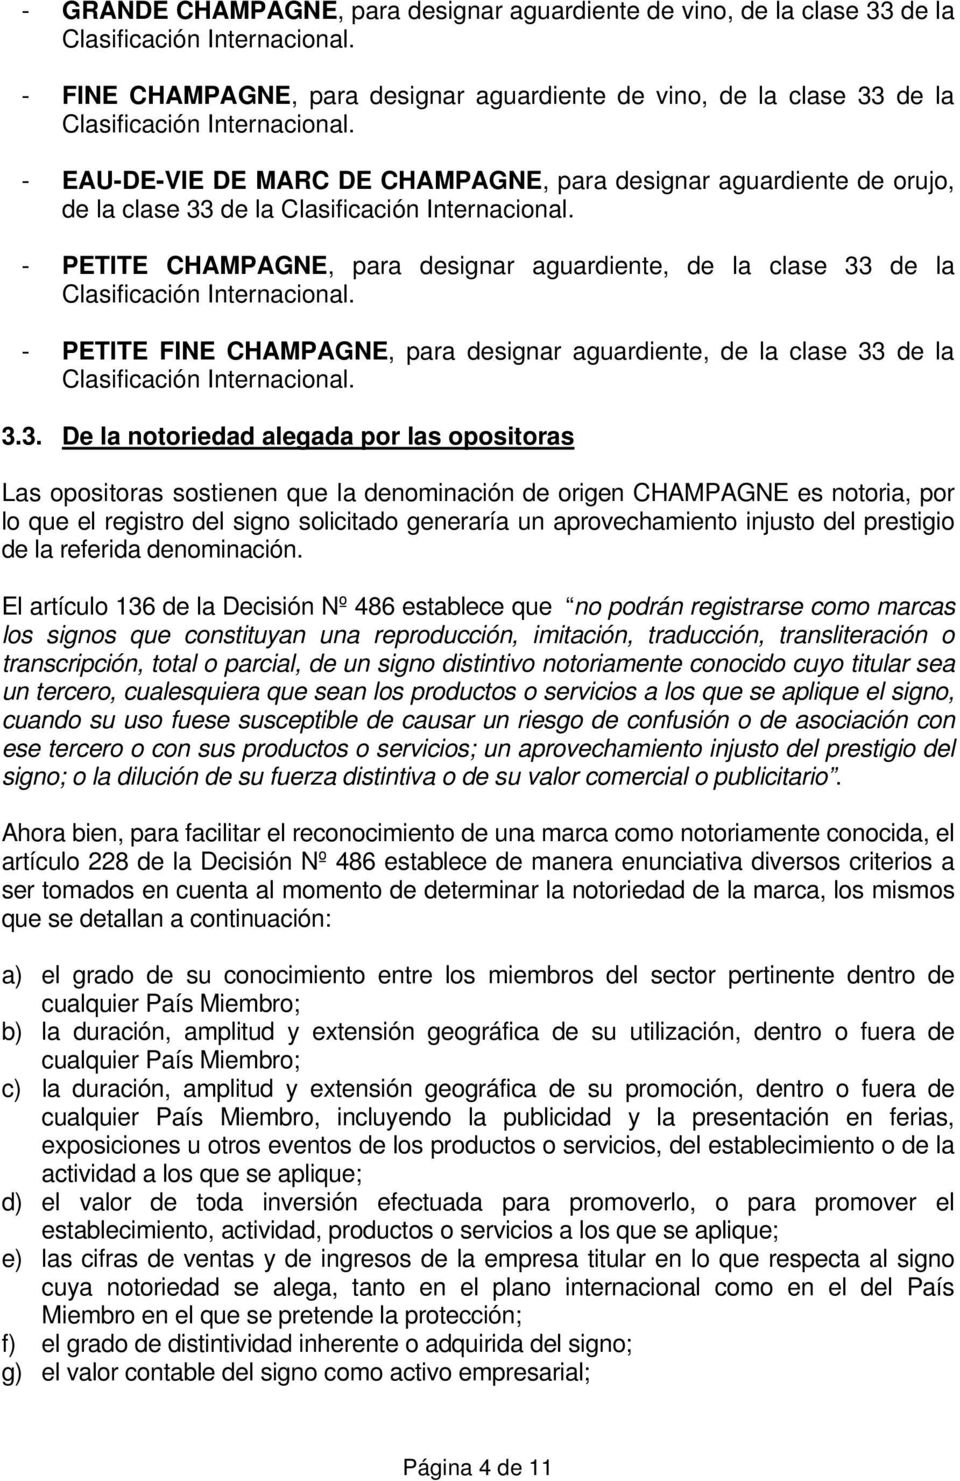 - EAU-DE-VIE DE MARC DE CHAMPAGNE, para designar aguardiente de orujo, de la clase 33 de la Clasificación Internacional.